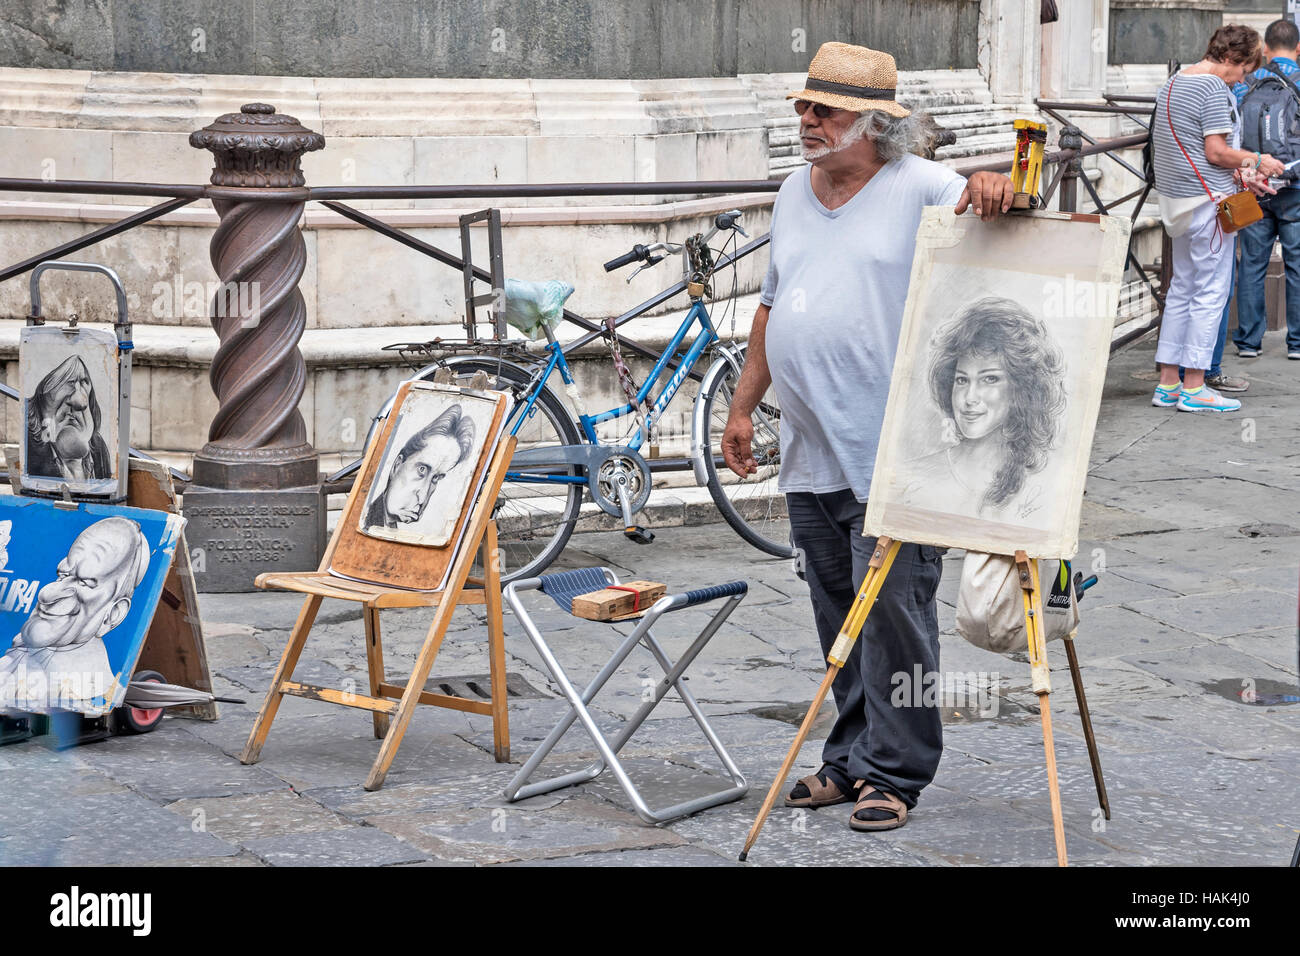 Artiste de rue, avec ses oeuvres, Florence, capitale de la région Toscane, Italie, Europe Banque D'Images